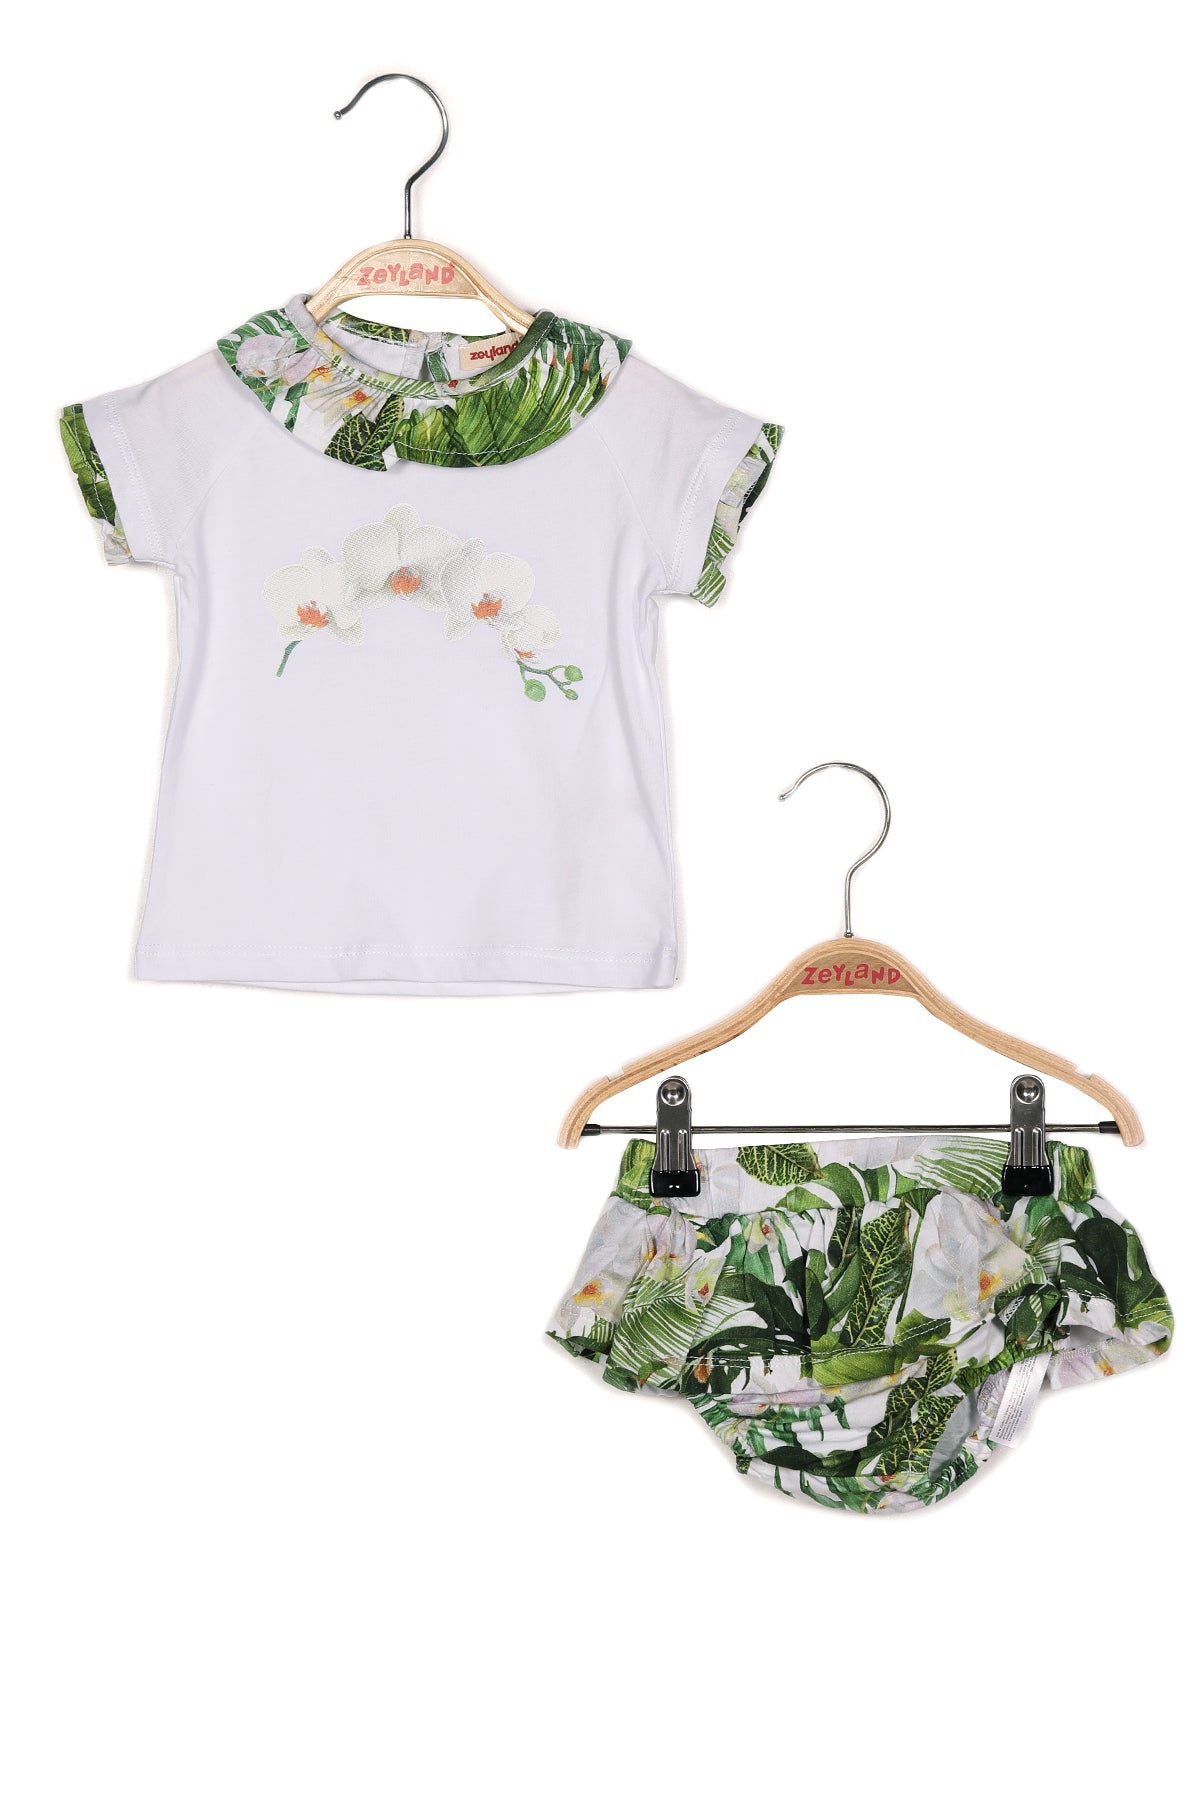 Kız Bebek Çiçek Baskılı Yakası Fırfırlı T-shirt ve Baskılı Fırfırlı Külot Takım-2